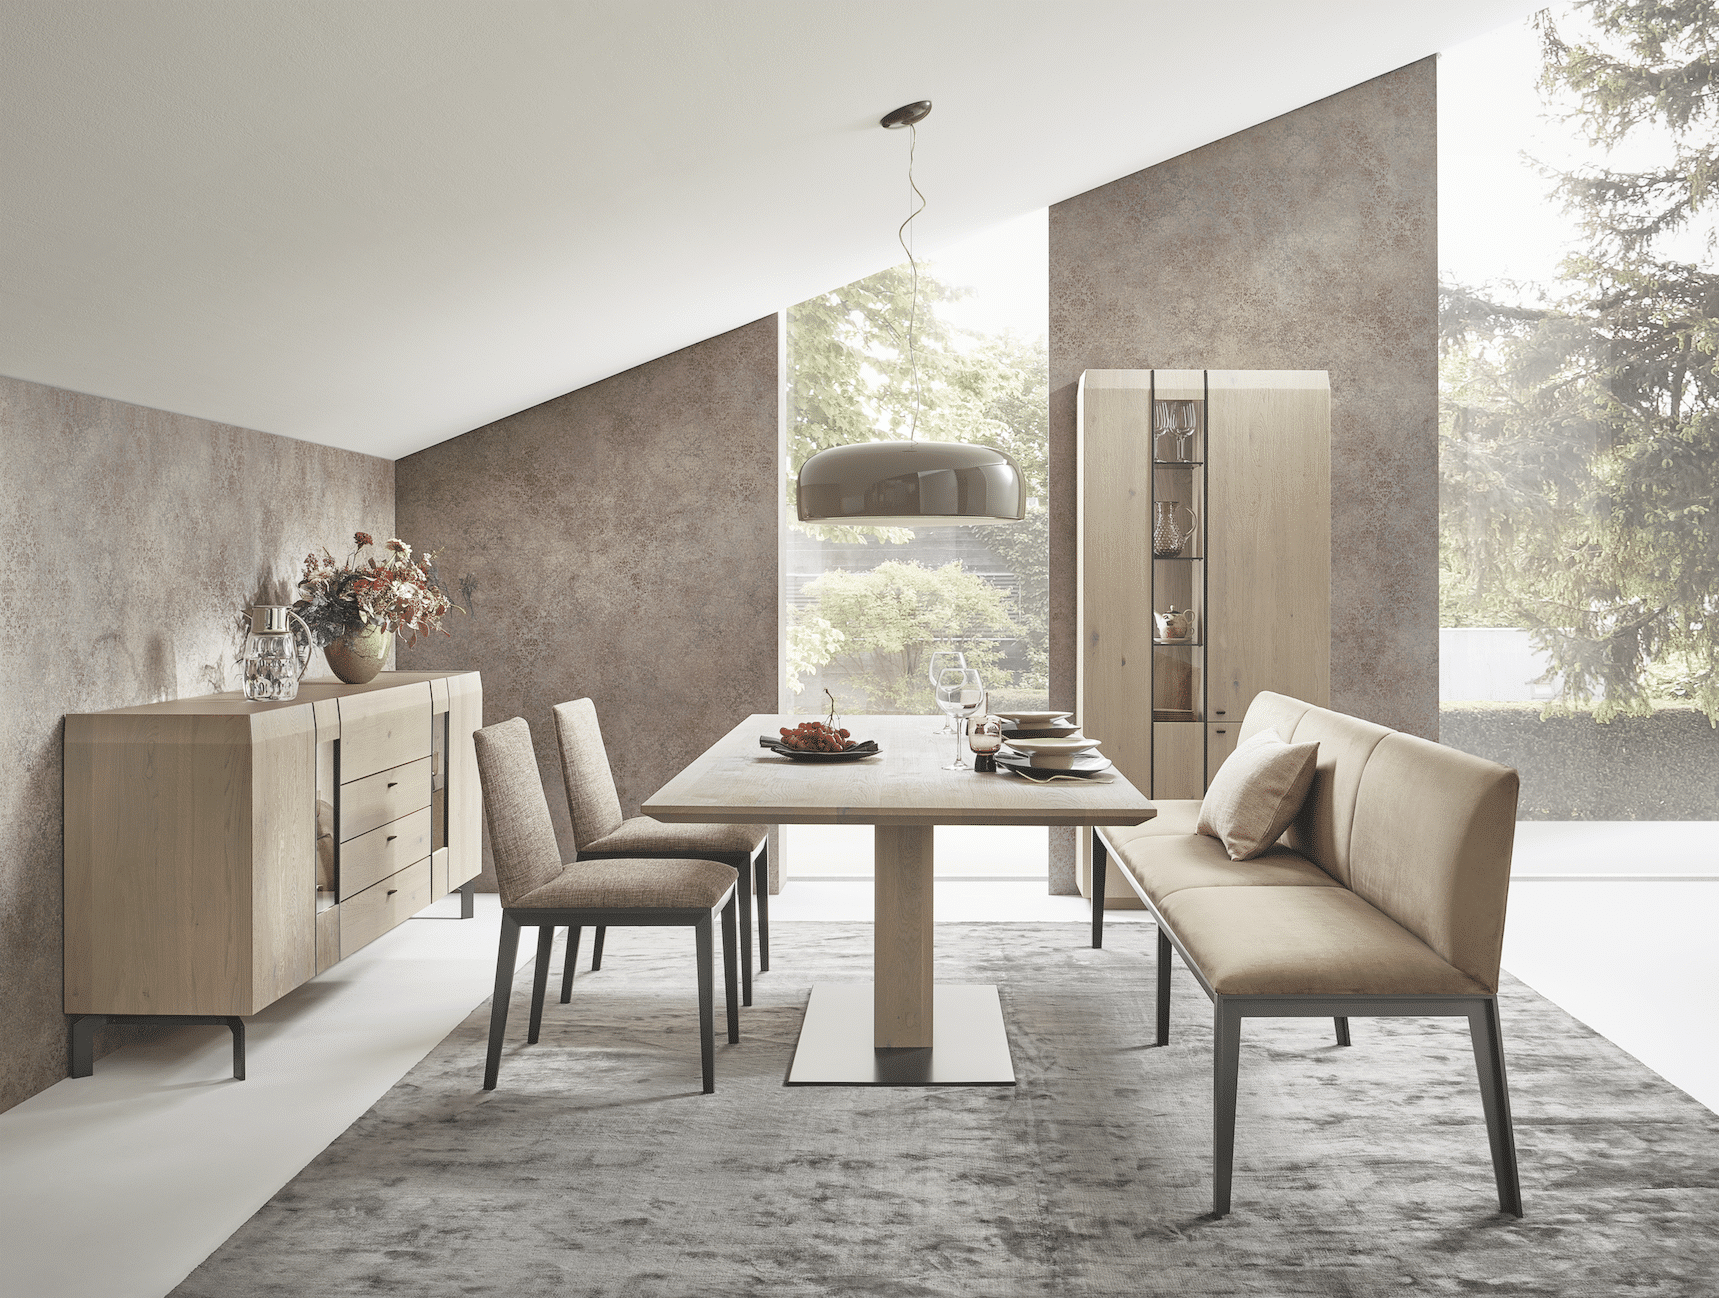 Tischlerei Bauer zeigt ein ruhiges Esszimmer in gedämpften Farben mit Möbeln aus Asteiche gebürstet von Anrei und einer markanten Dachschräge.